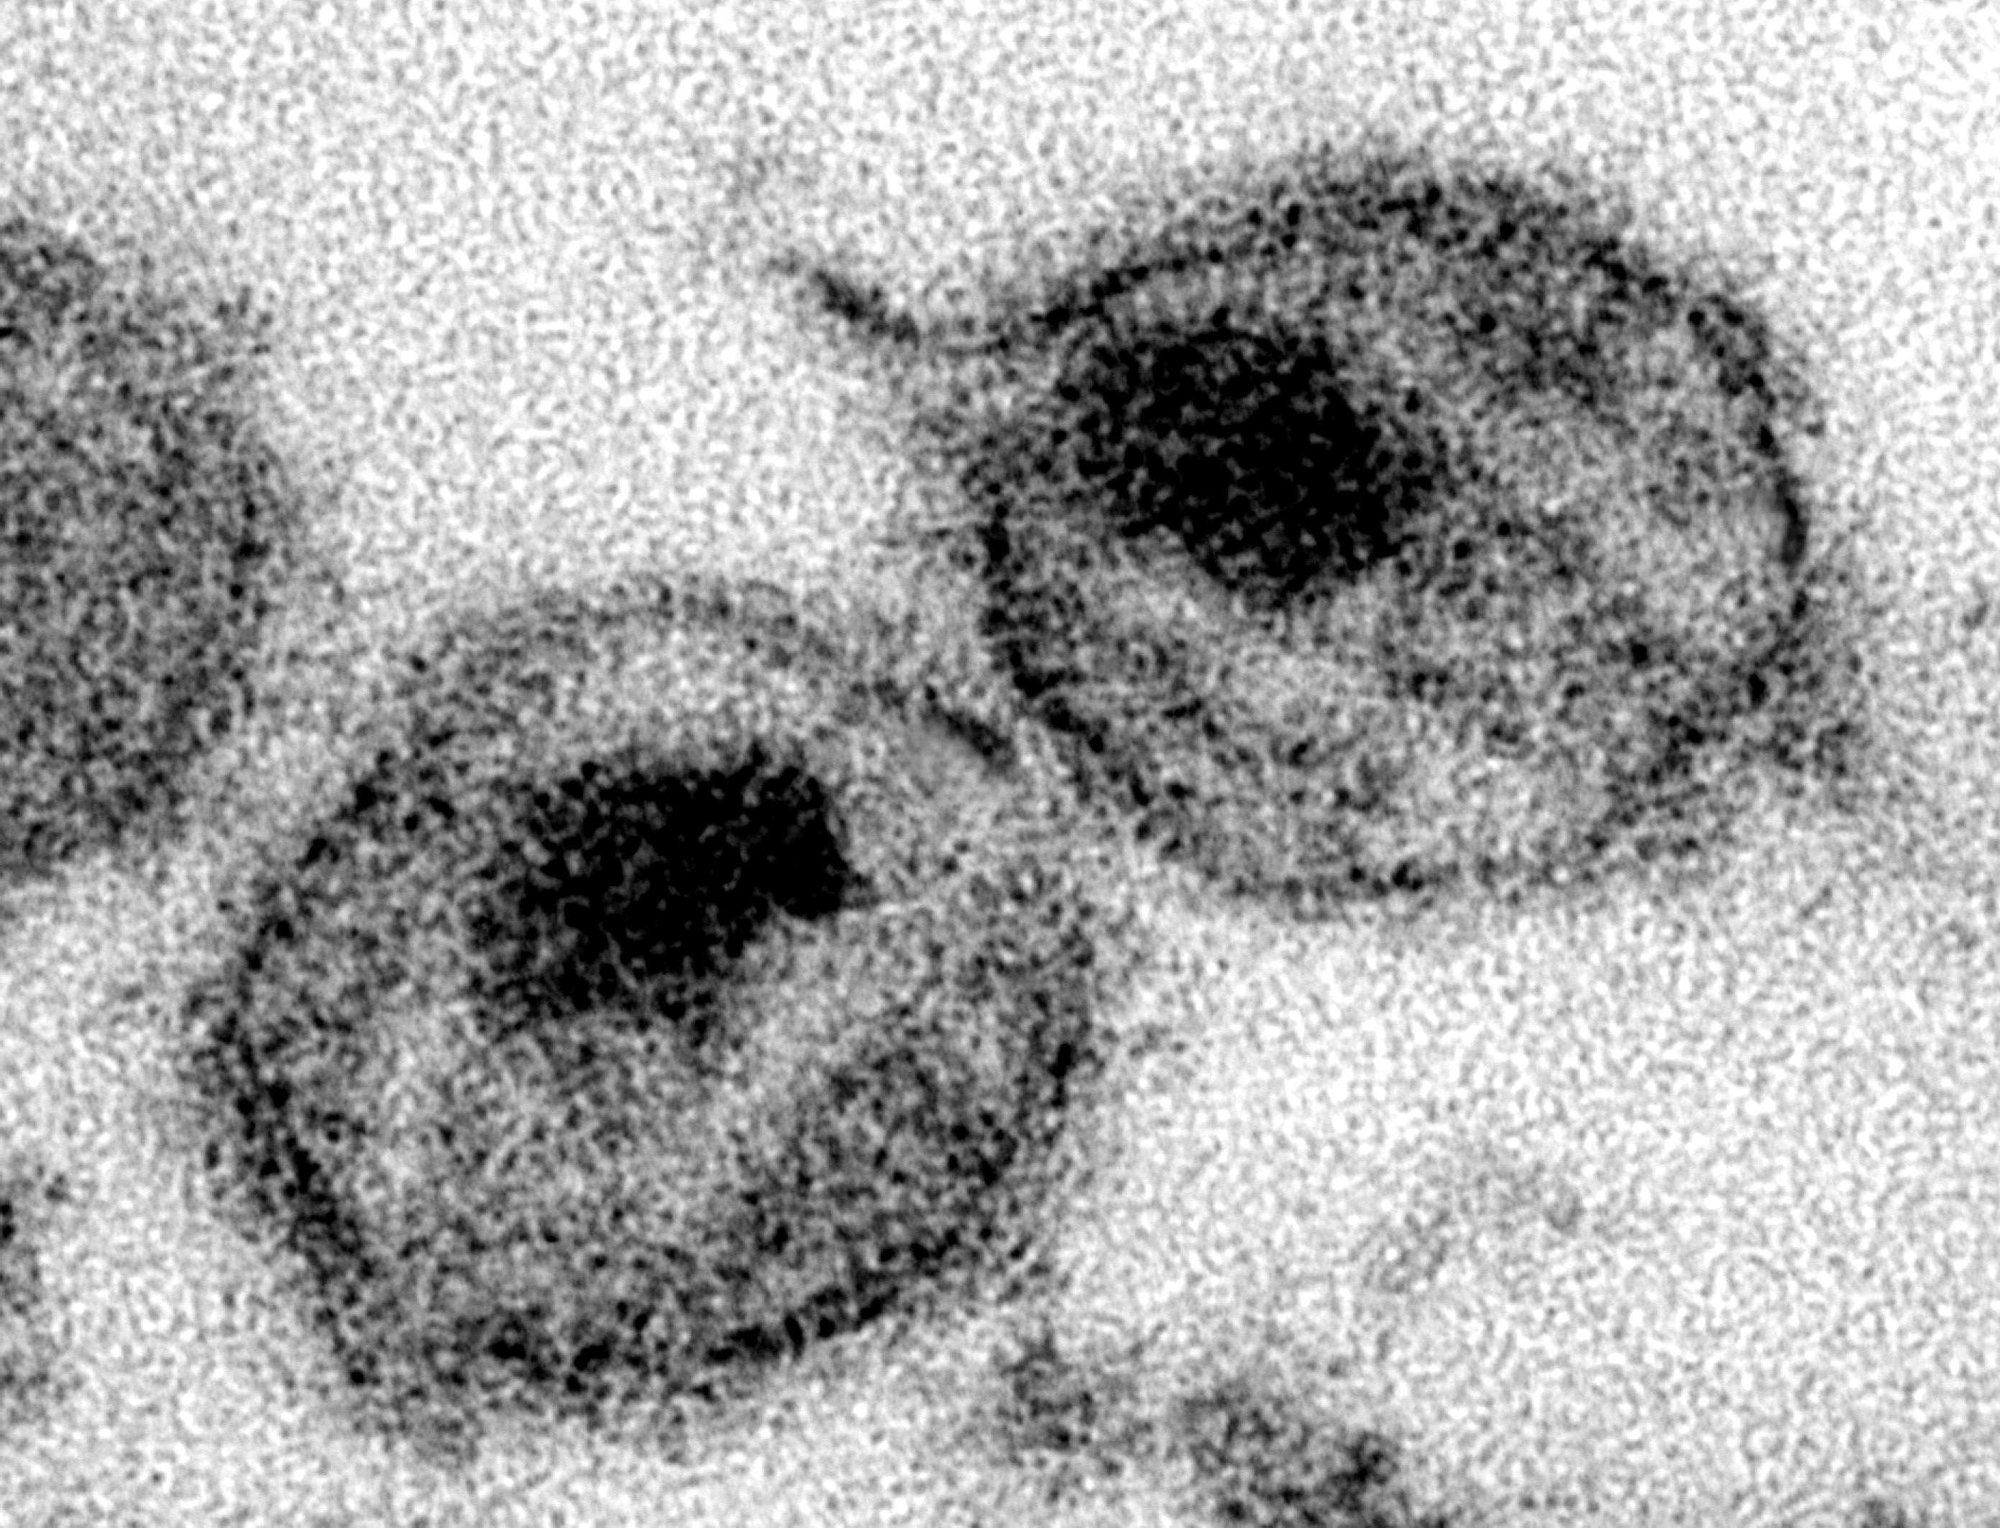 Image de virus du VIH, responsable du sida, prise au microscope électronique.